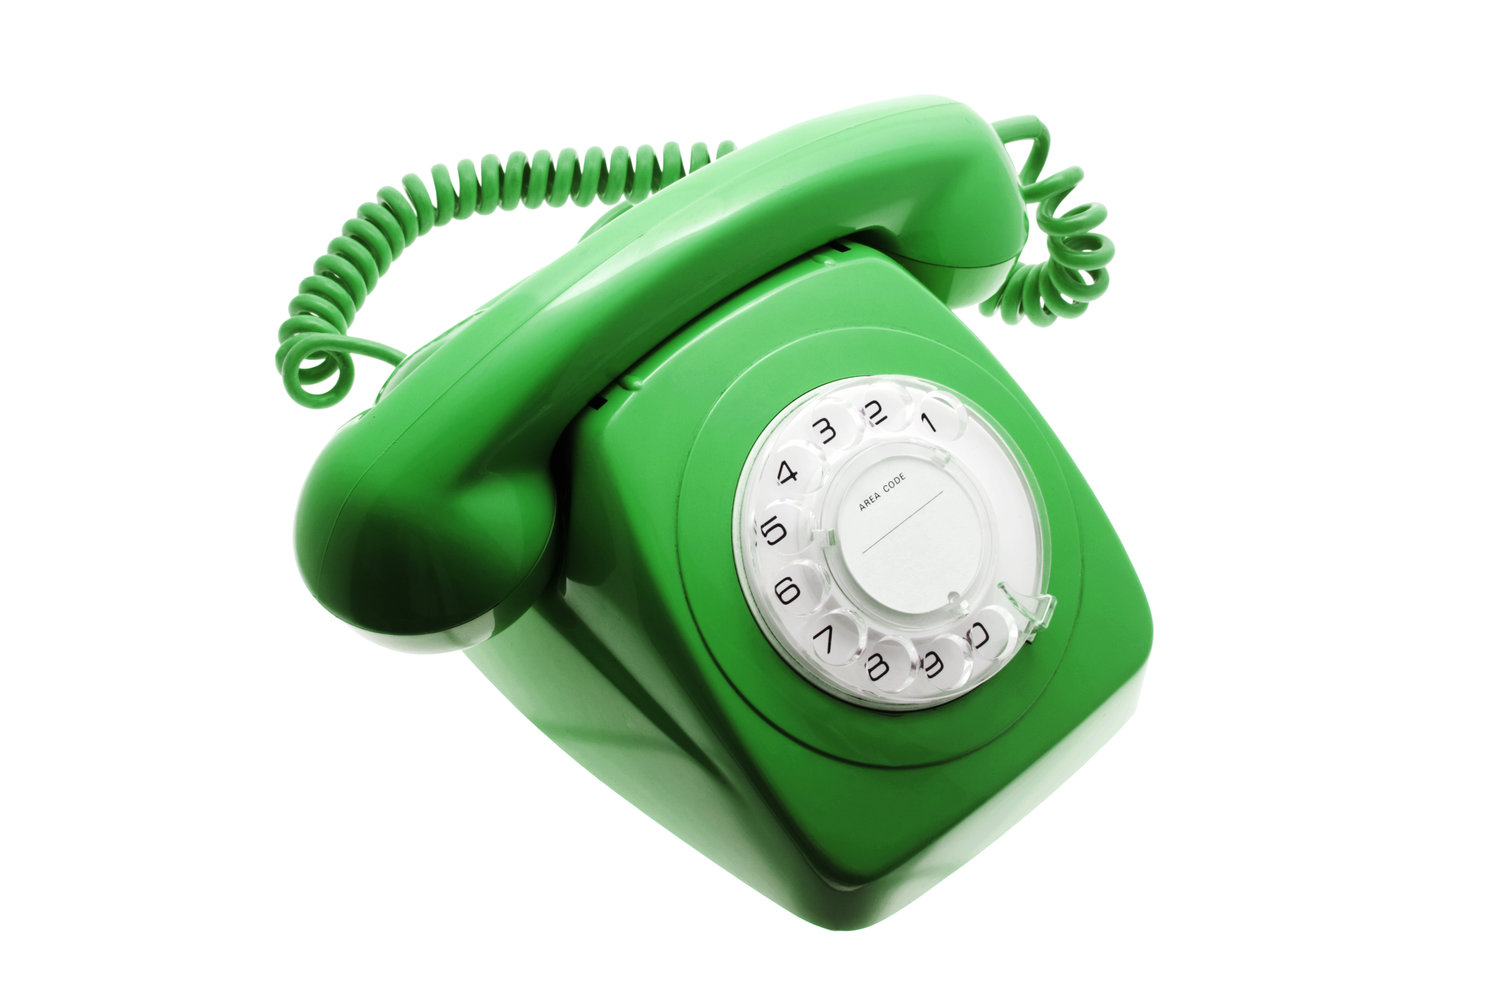 Ретро телефон зеленый. Старый телефон зеленый. Игрушка телефон зеленый купить. 24/7 Green with Phone. Зеленый телефон в вк